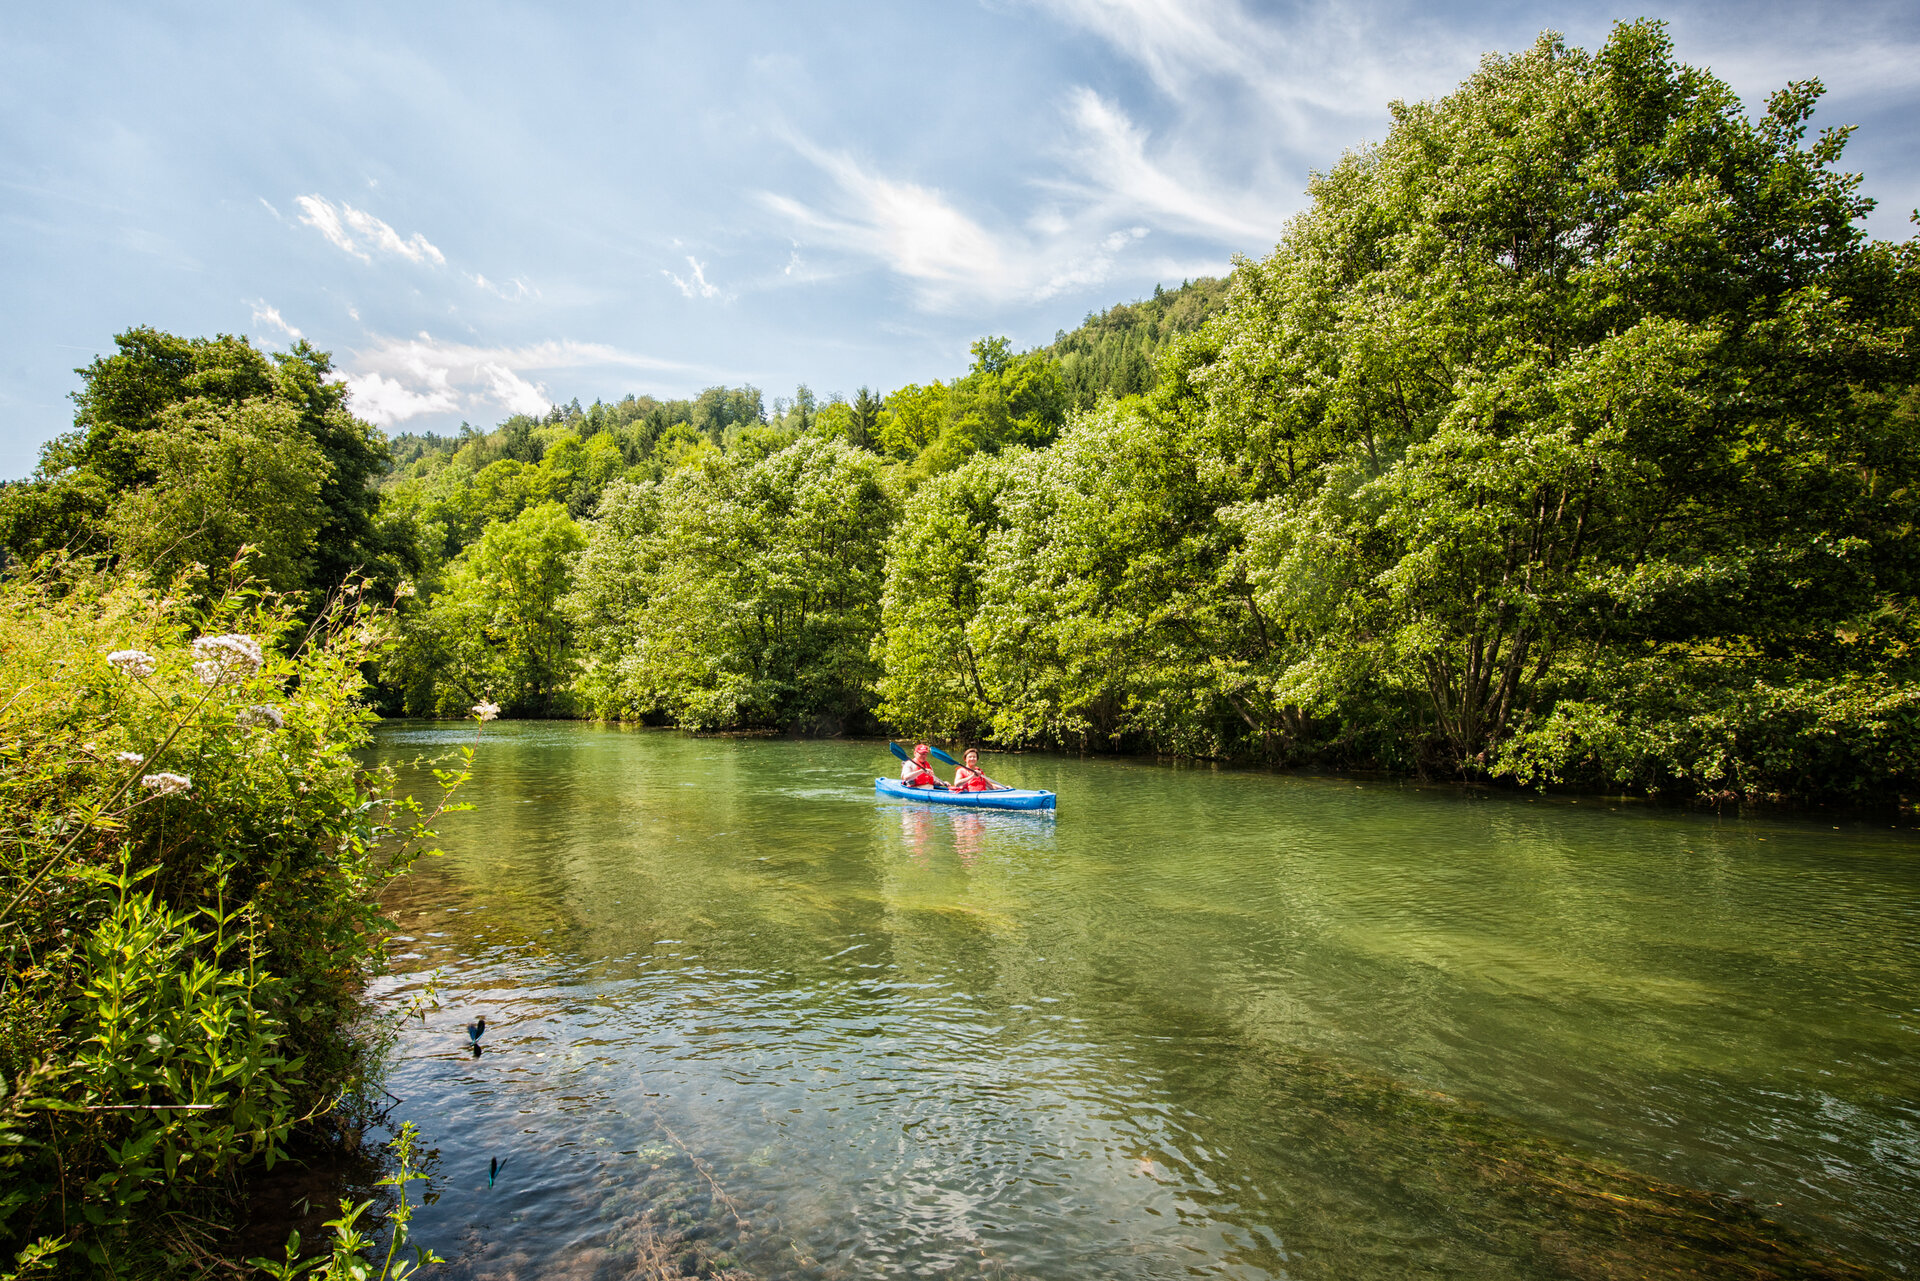 Ein Mann und eine Frau paddeln in einem blauen Kajak auf einem ruhigen Fluss.